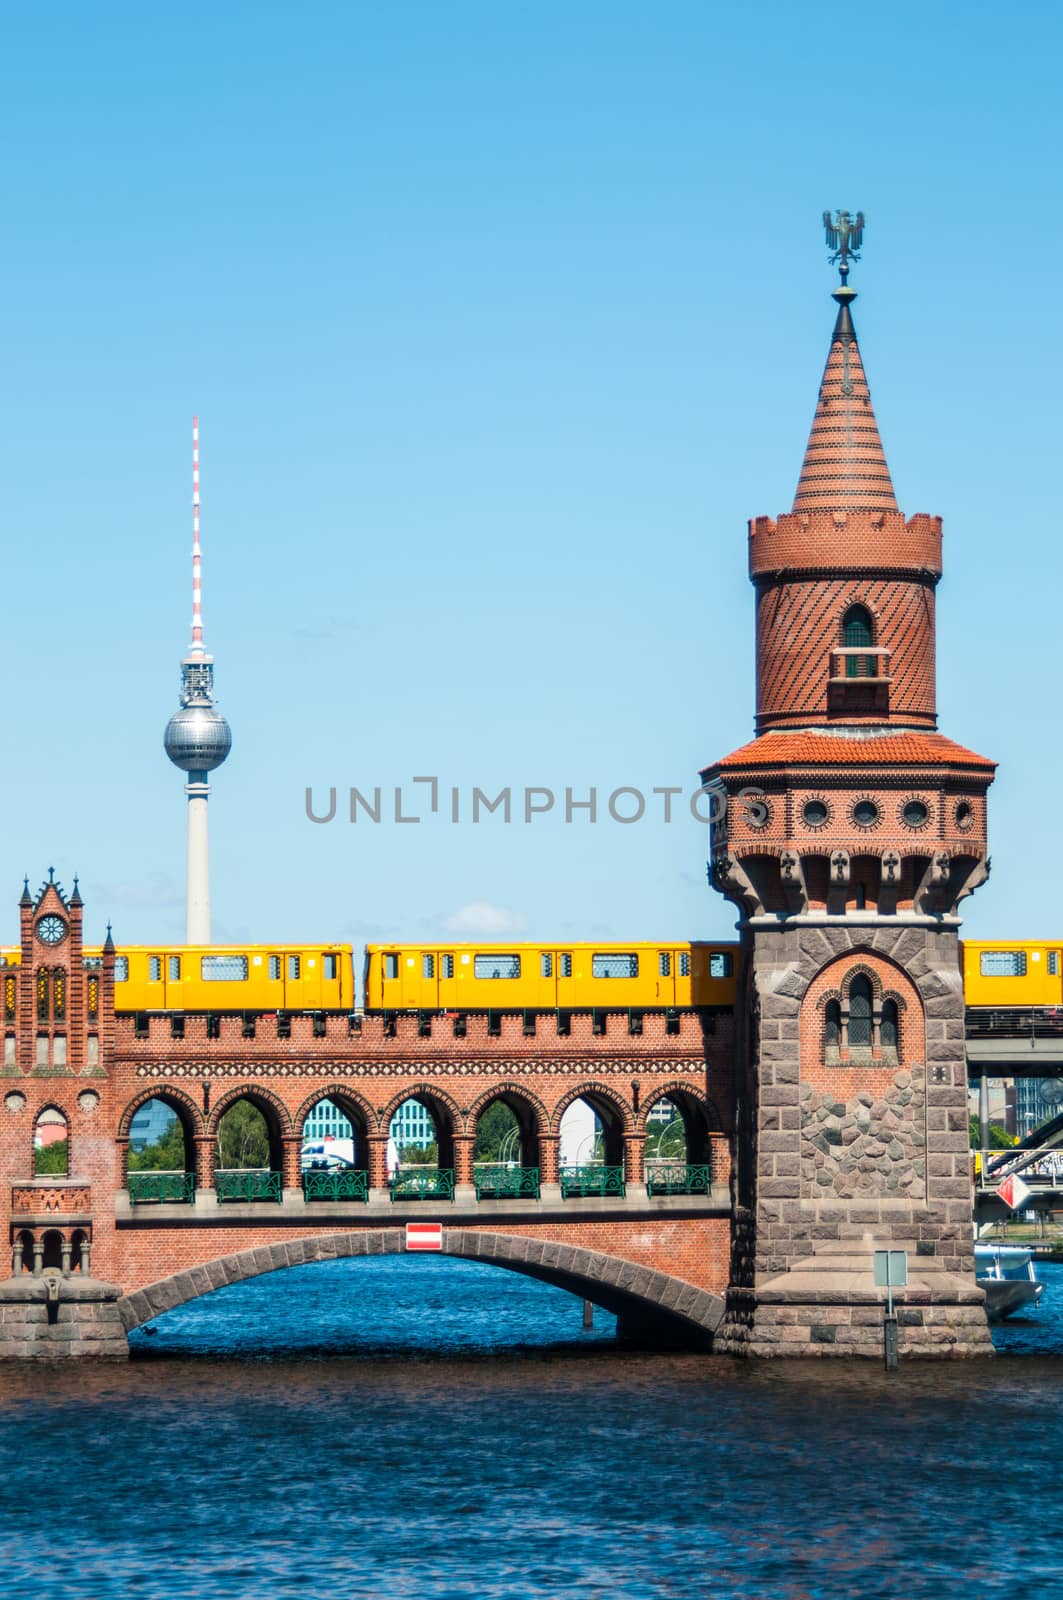 Oberbaum bridge by Jule_Berlin